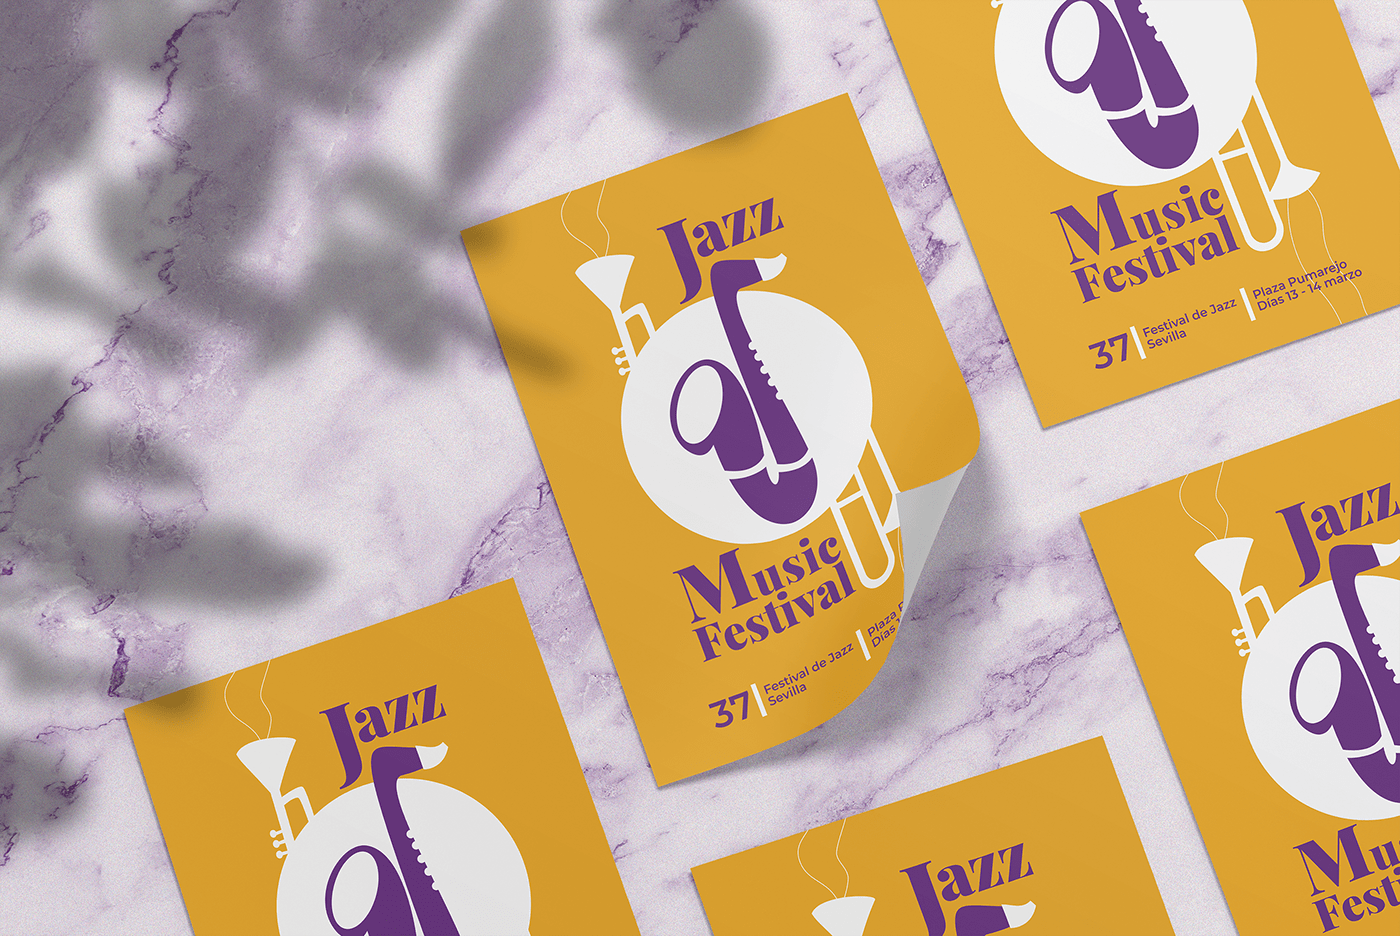 festival jazz music poster